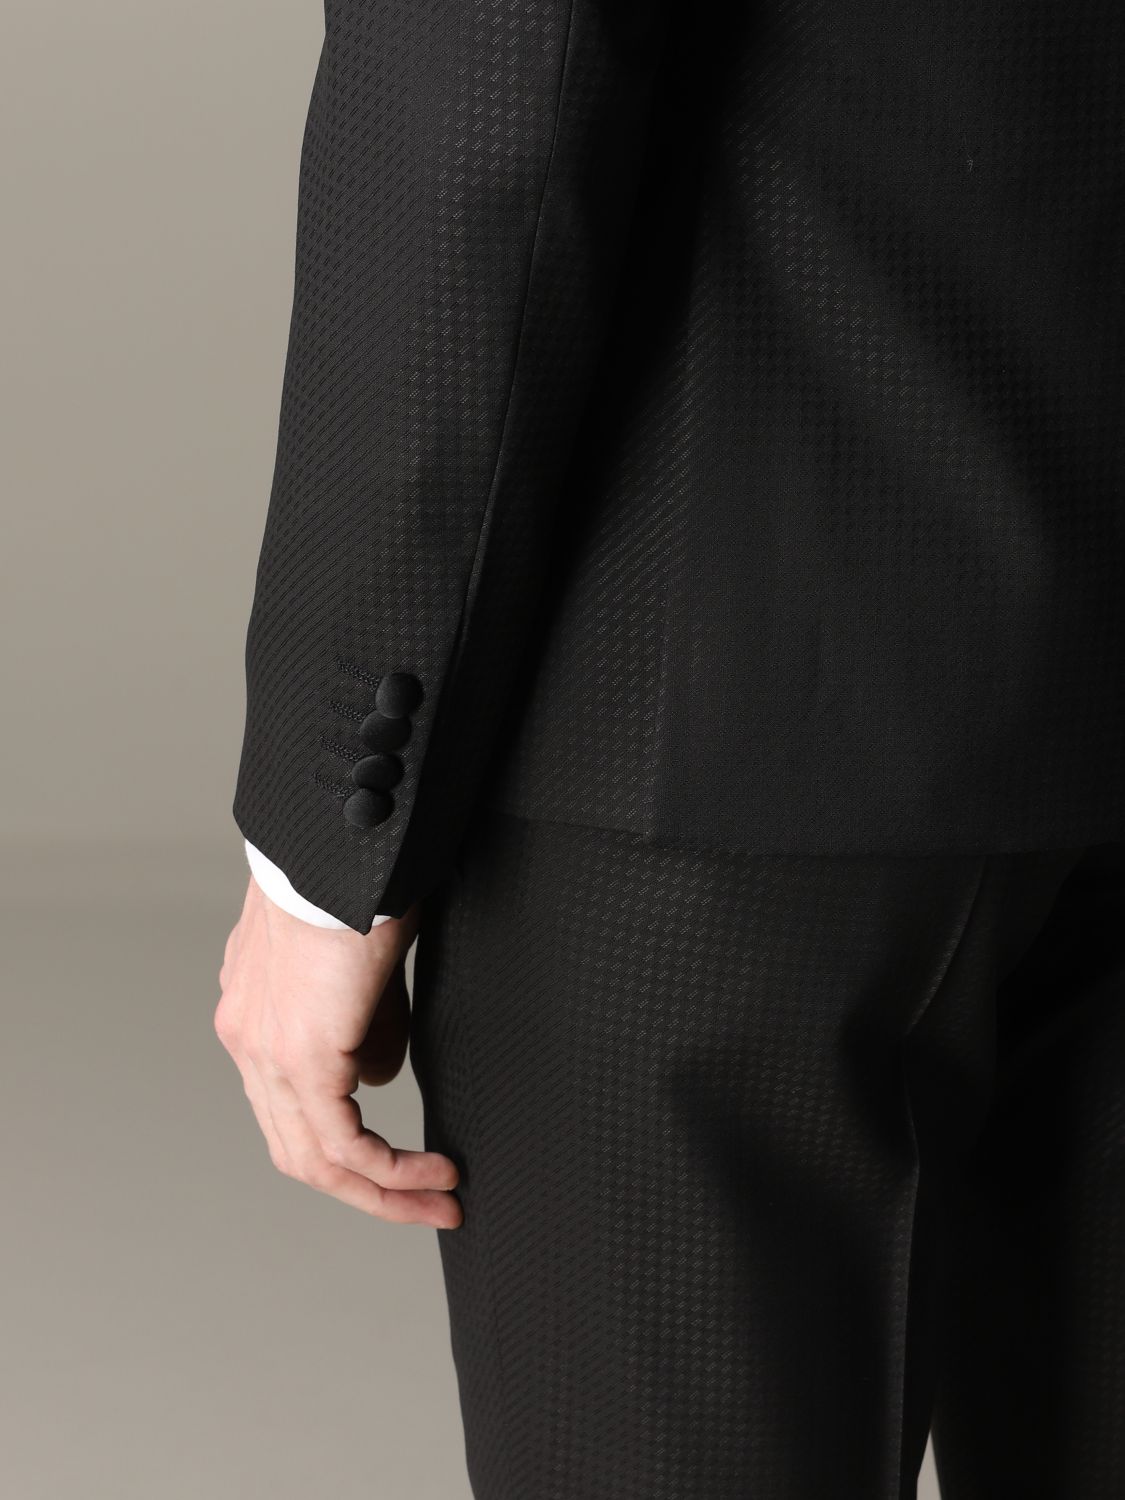 Emporio Armani Outlet: suit for men - Black | Emporio Armani suit ...